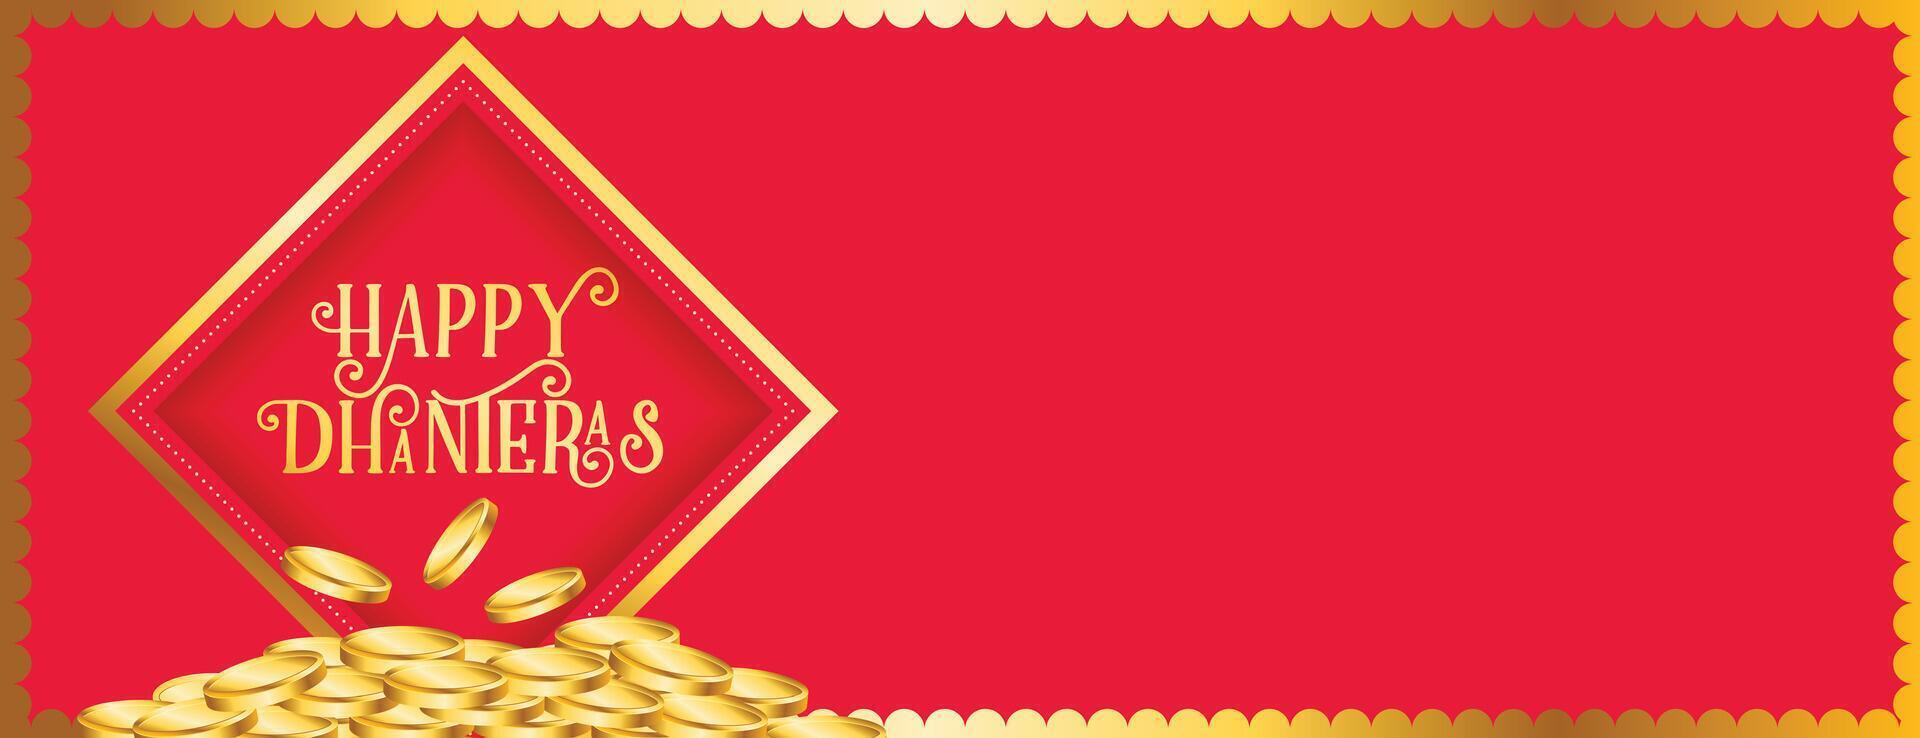 magnifique hindou Festival content dhanteras un événement affiche avec d'or pièce de monnaie vecteur